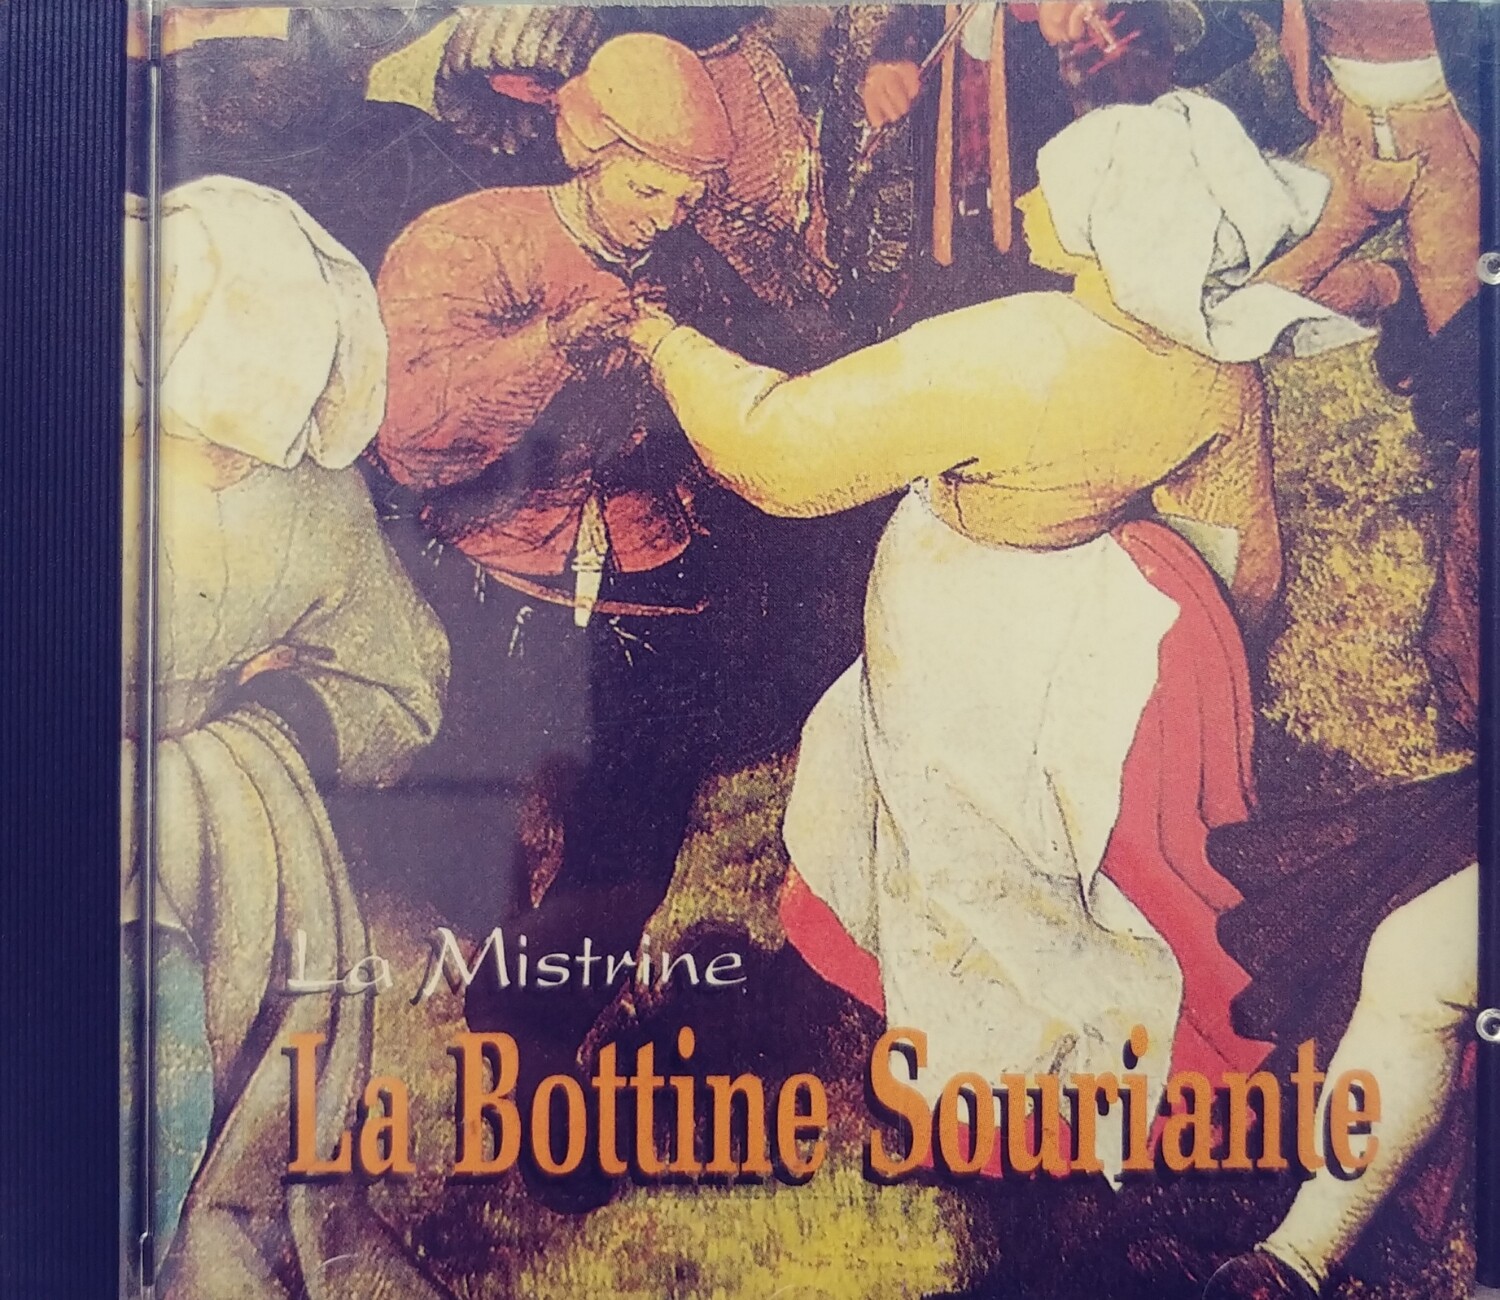 La bottine Souriante - La Mistrine (CD)